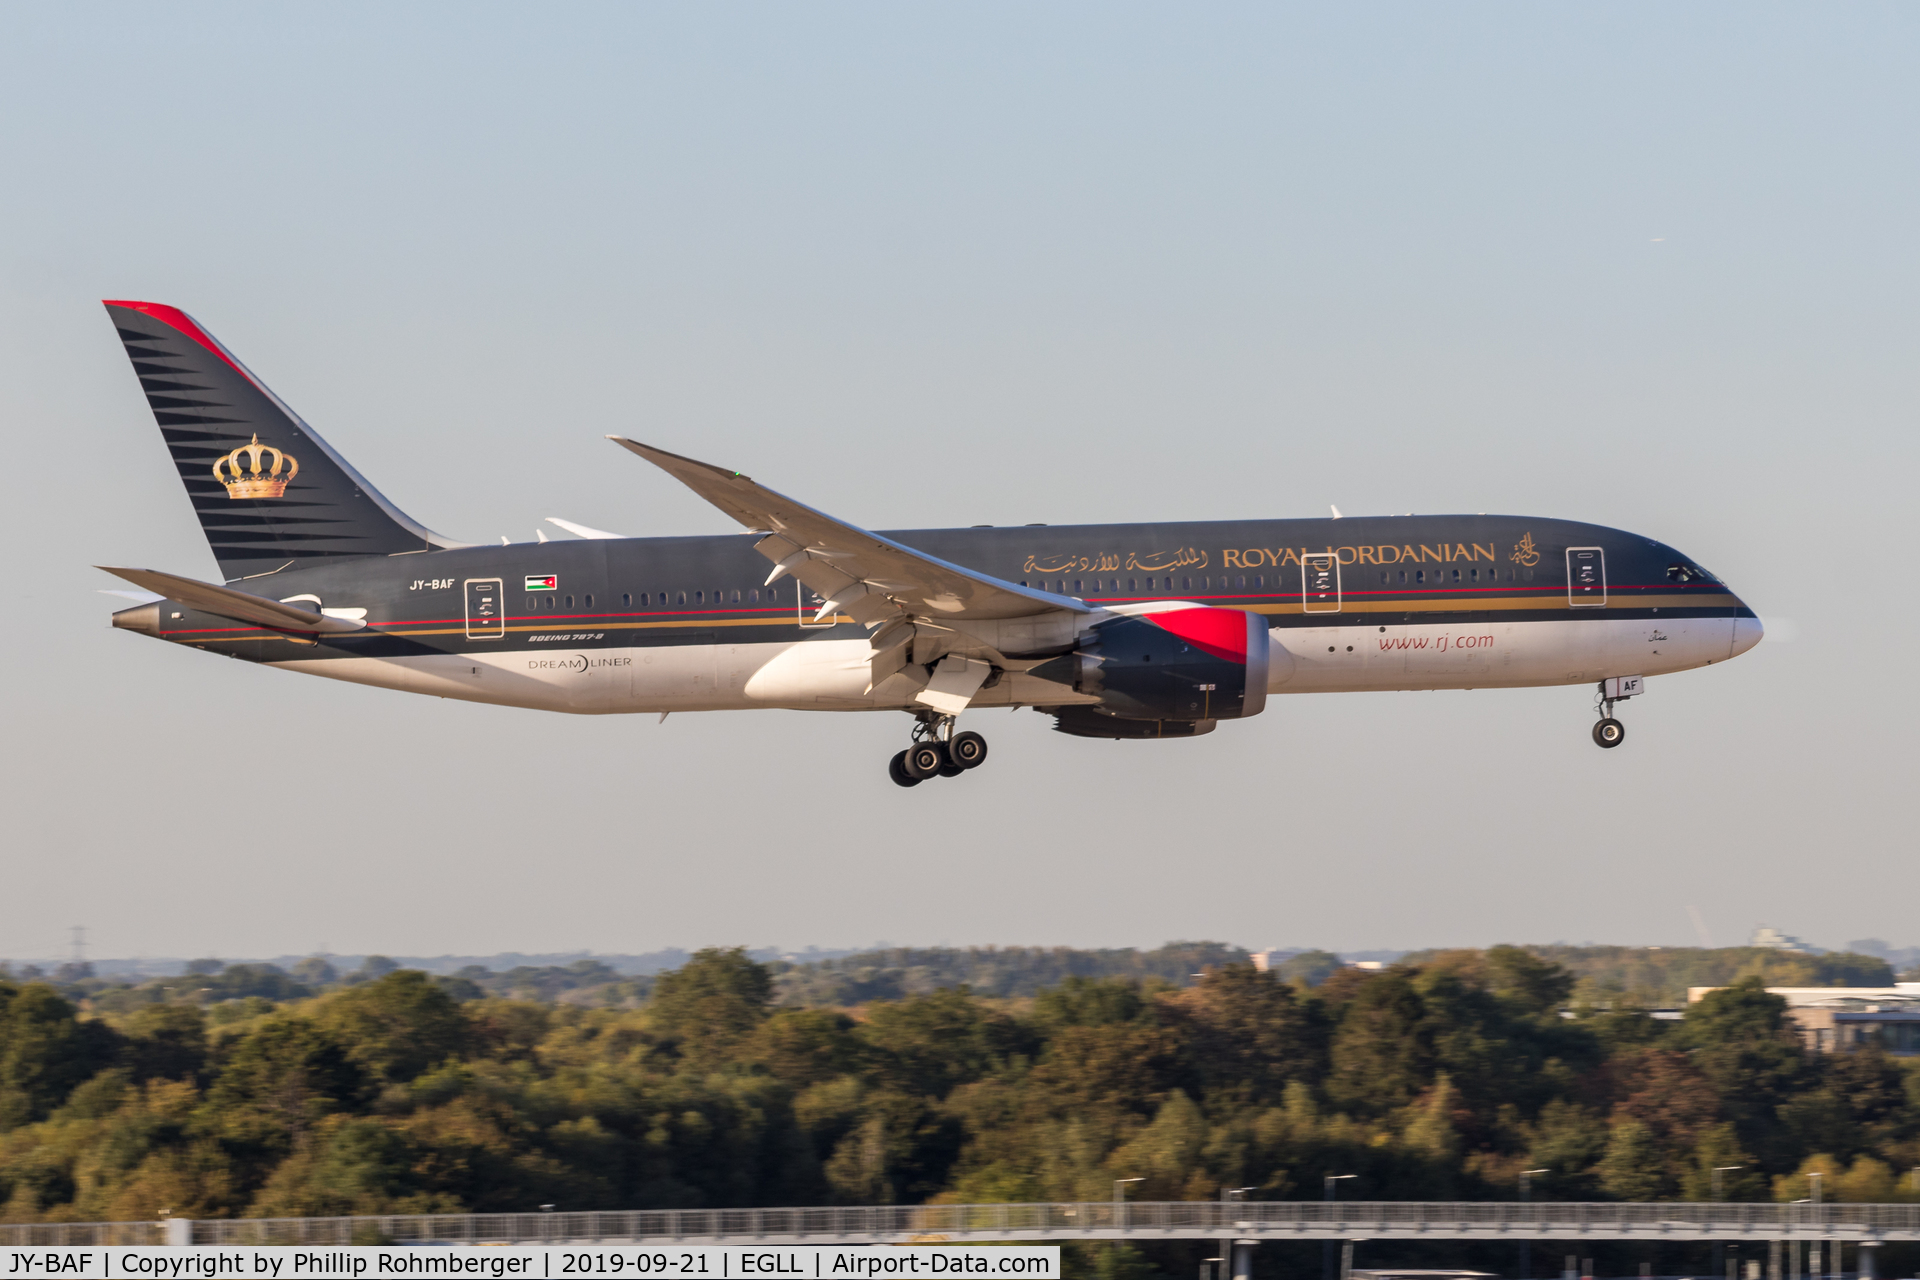 JY-BAF, 2014 Boeing 787-8 Dreamliner Dreamliner C/N 36112, approaching runway 09L at LHR.